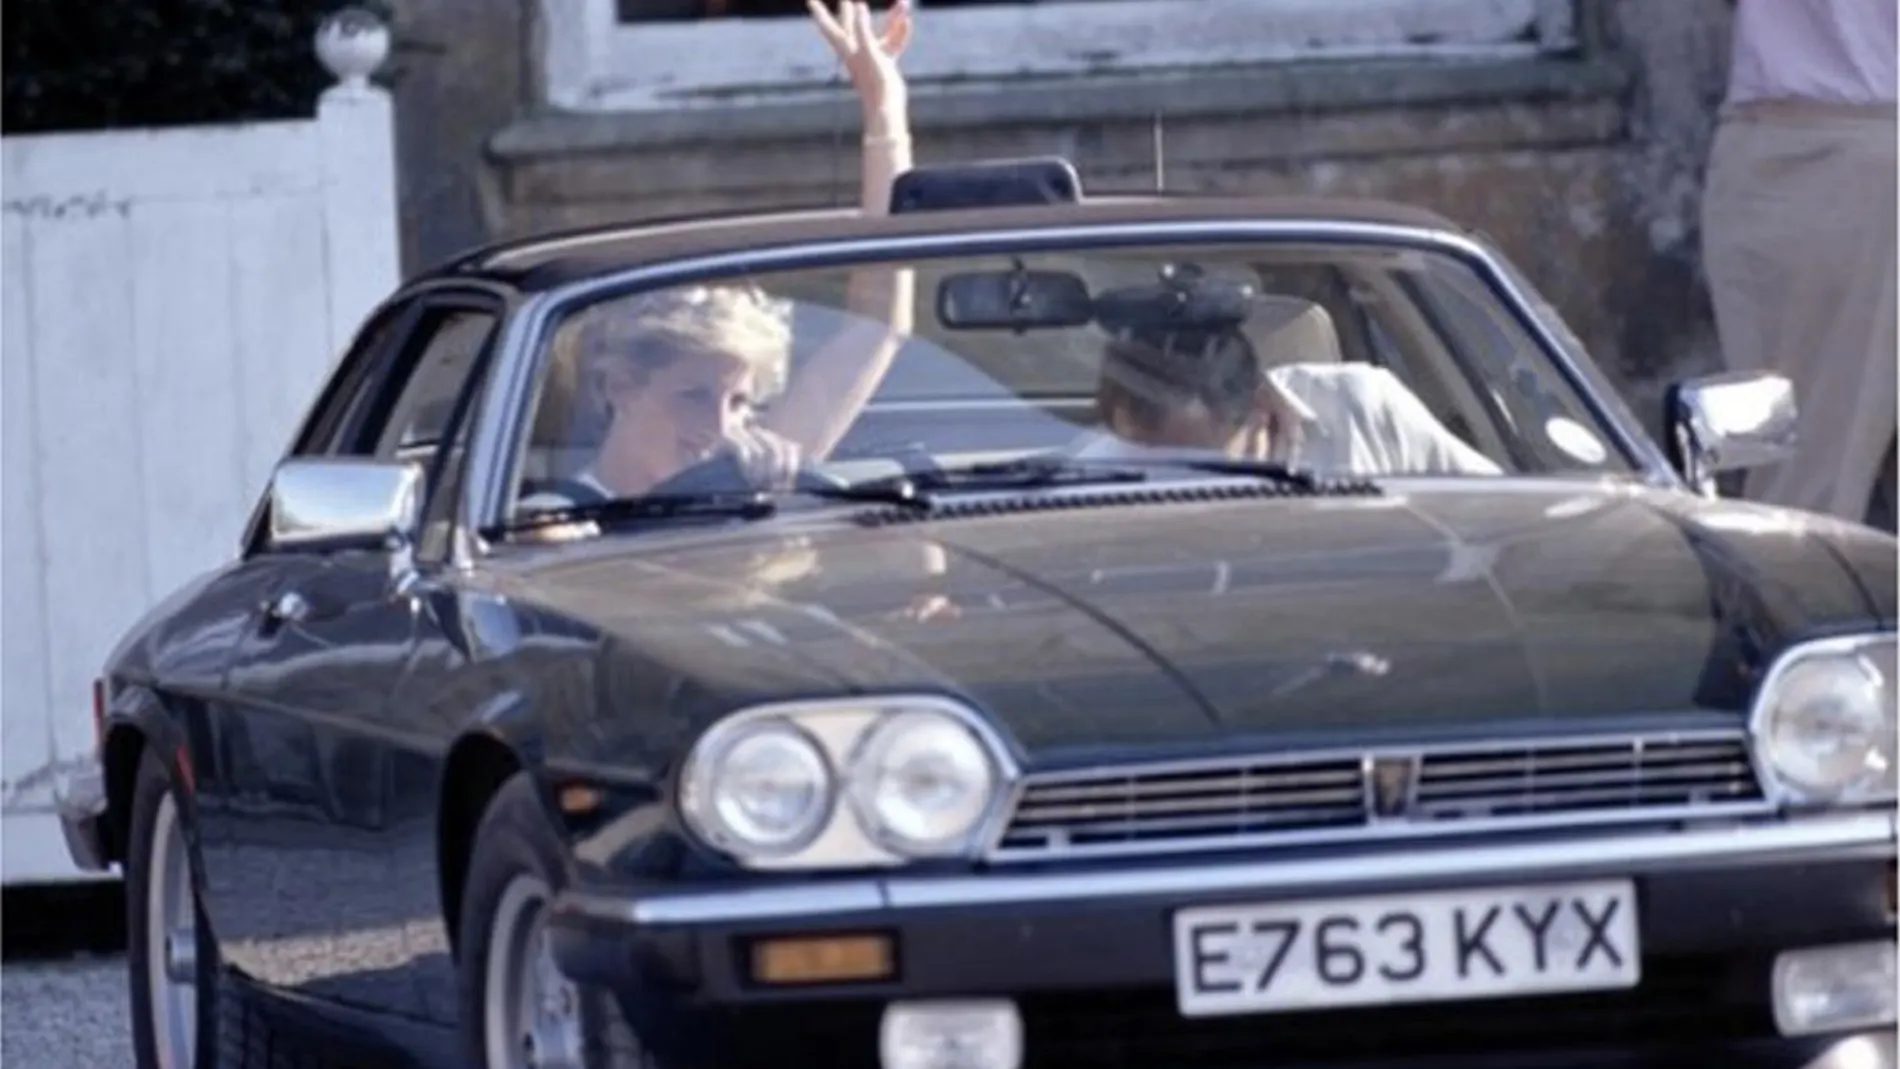 Diana de Gales conduciendo su coche